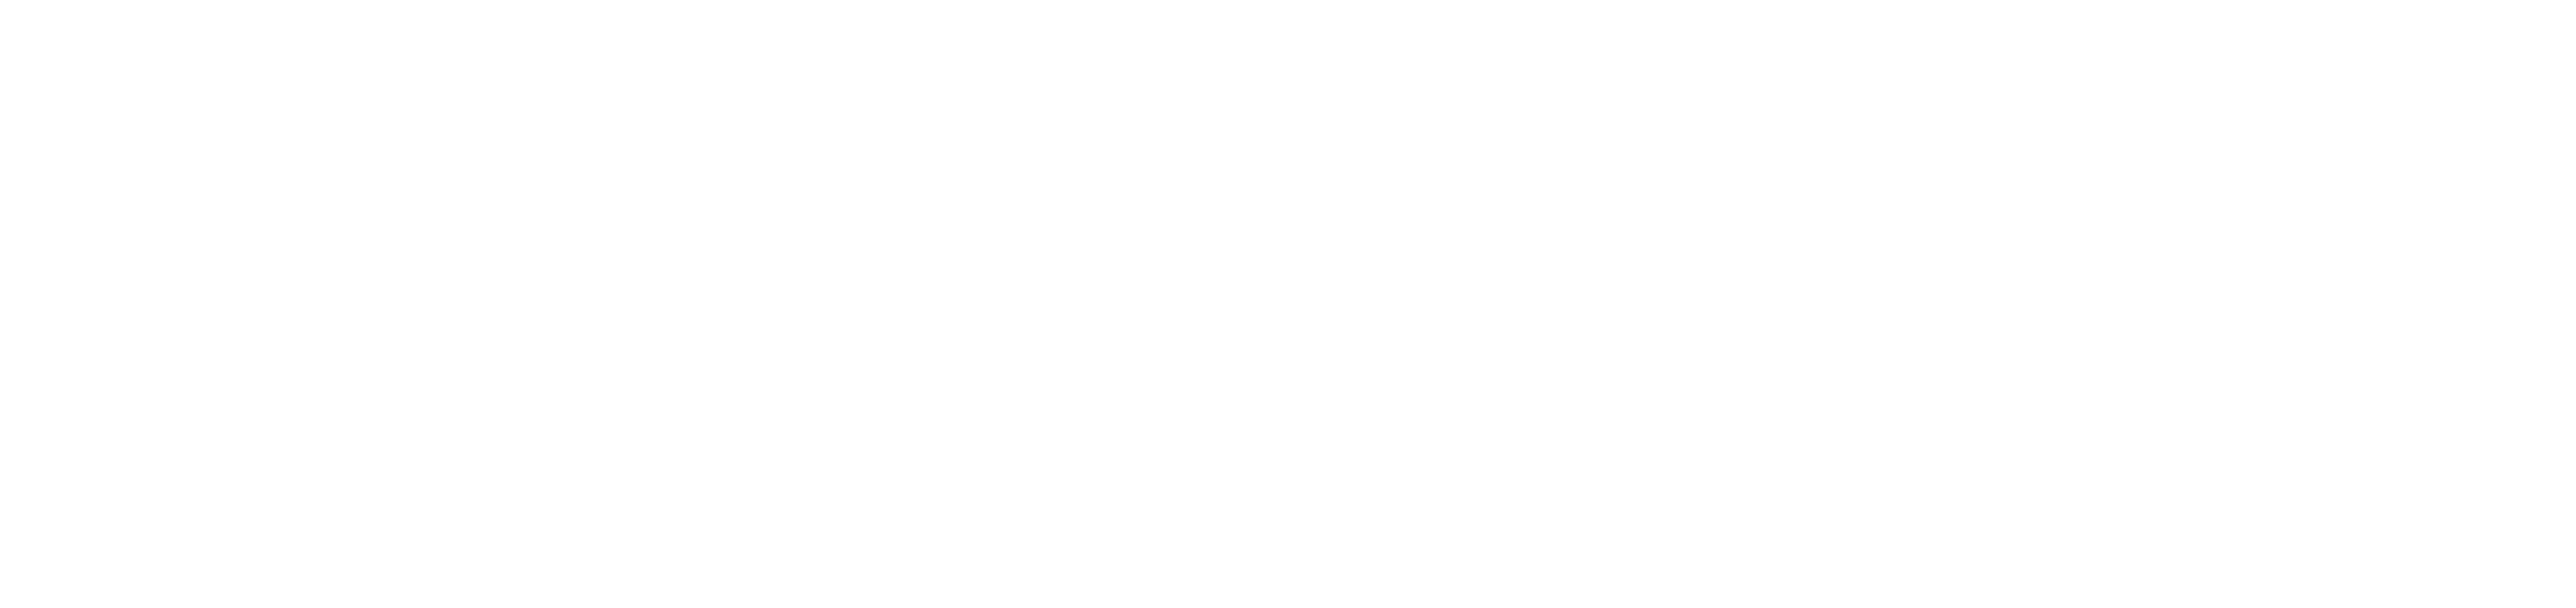 Logo der Flairhotels mit dem Untertitel In den Regionen zuhause